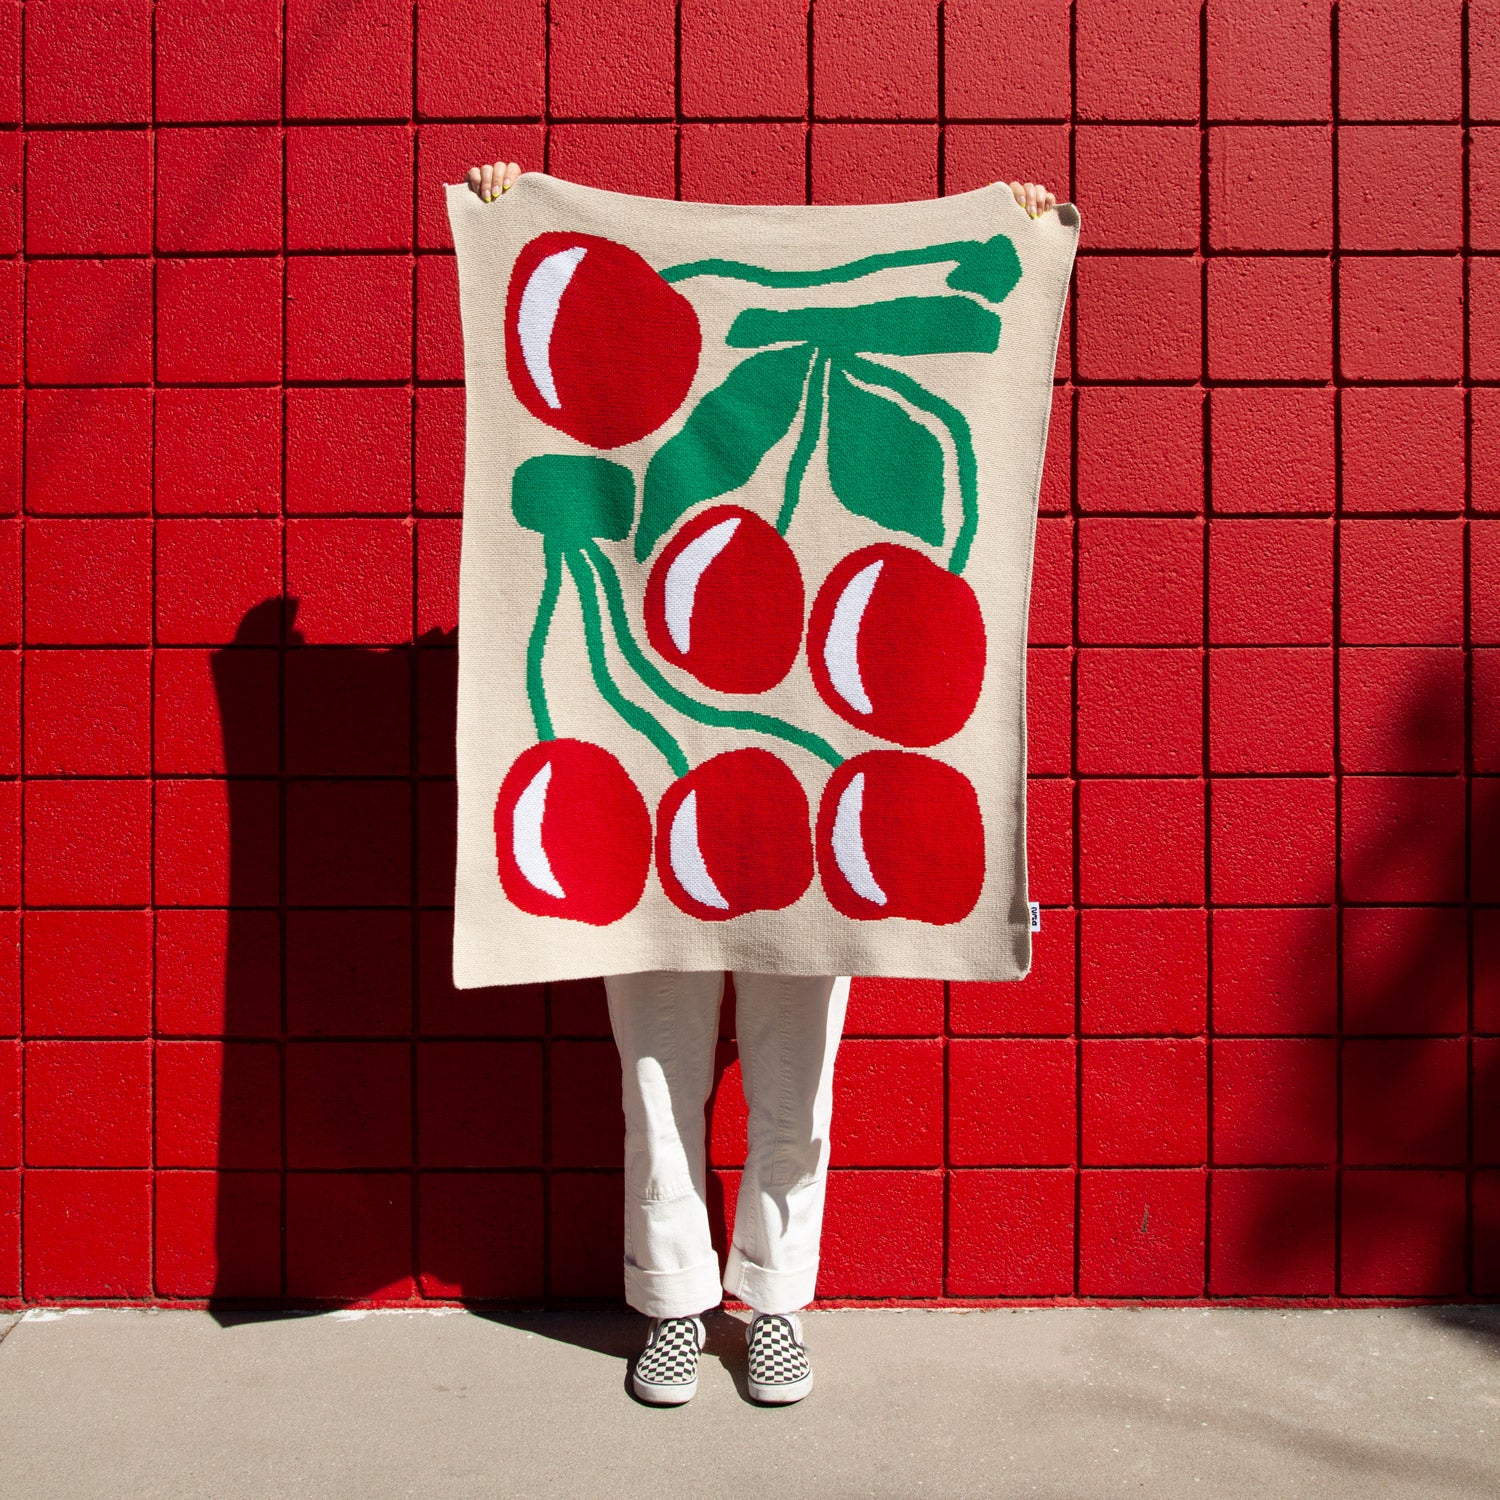 Arvo Knit Blanket by Jesse Brown for Slowdown Studio – My o My